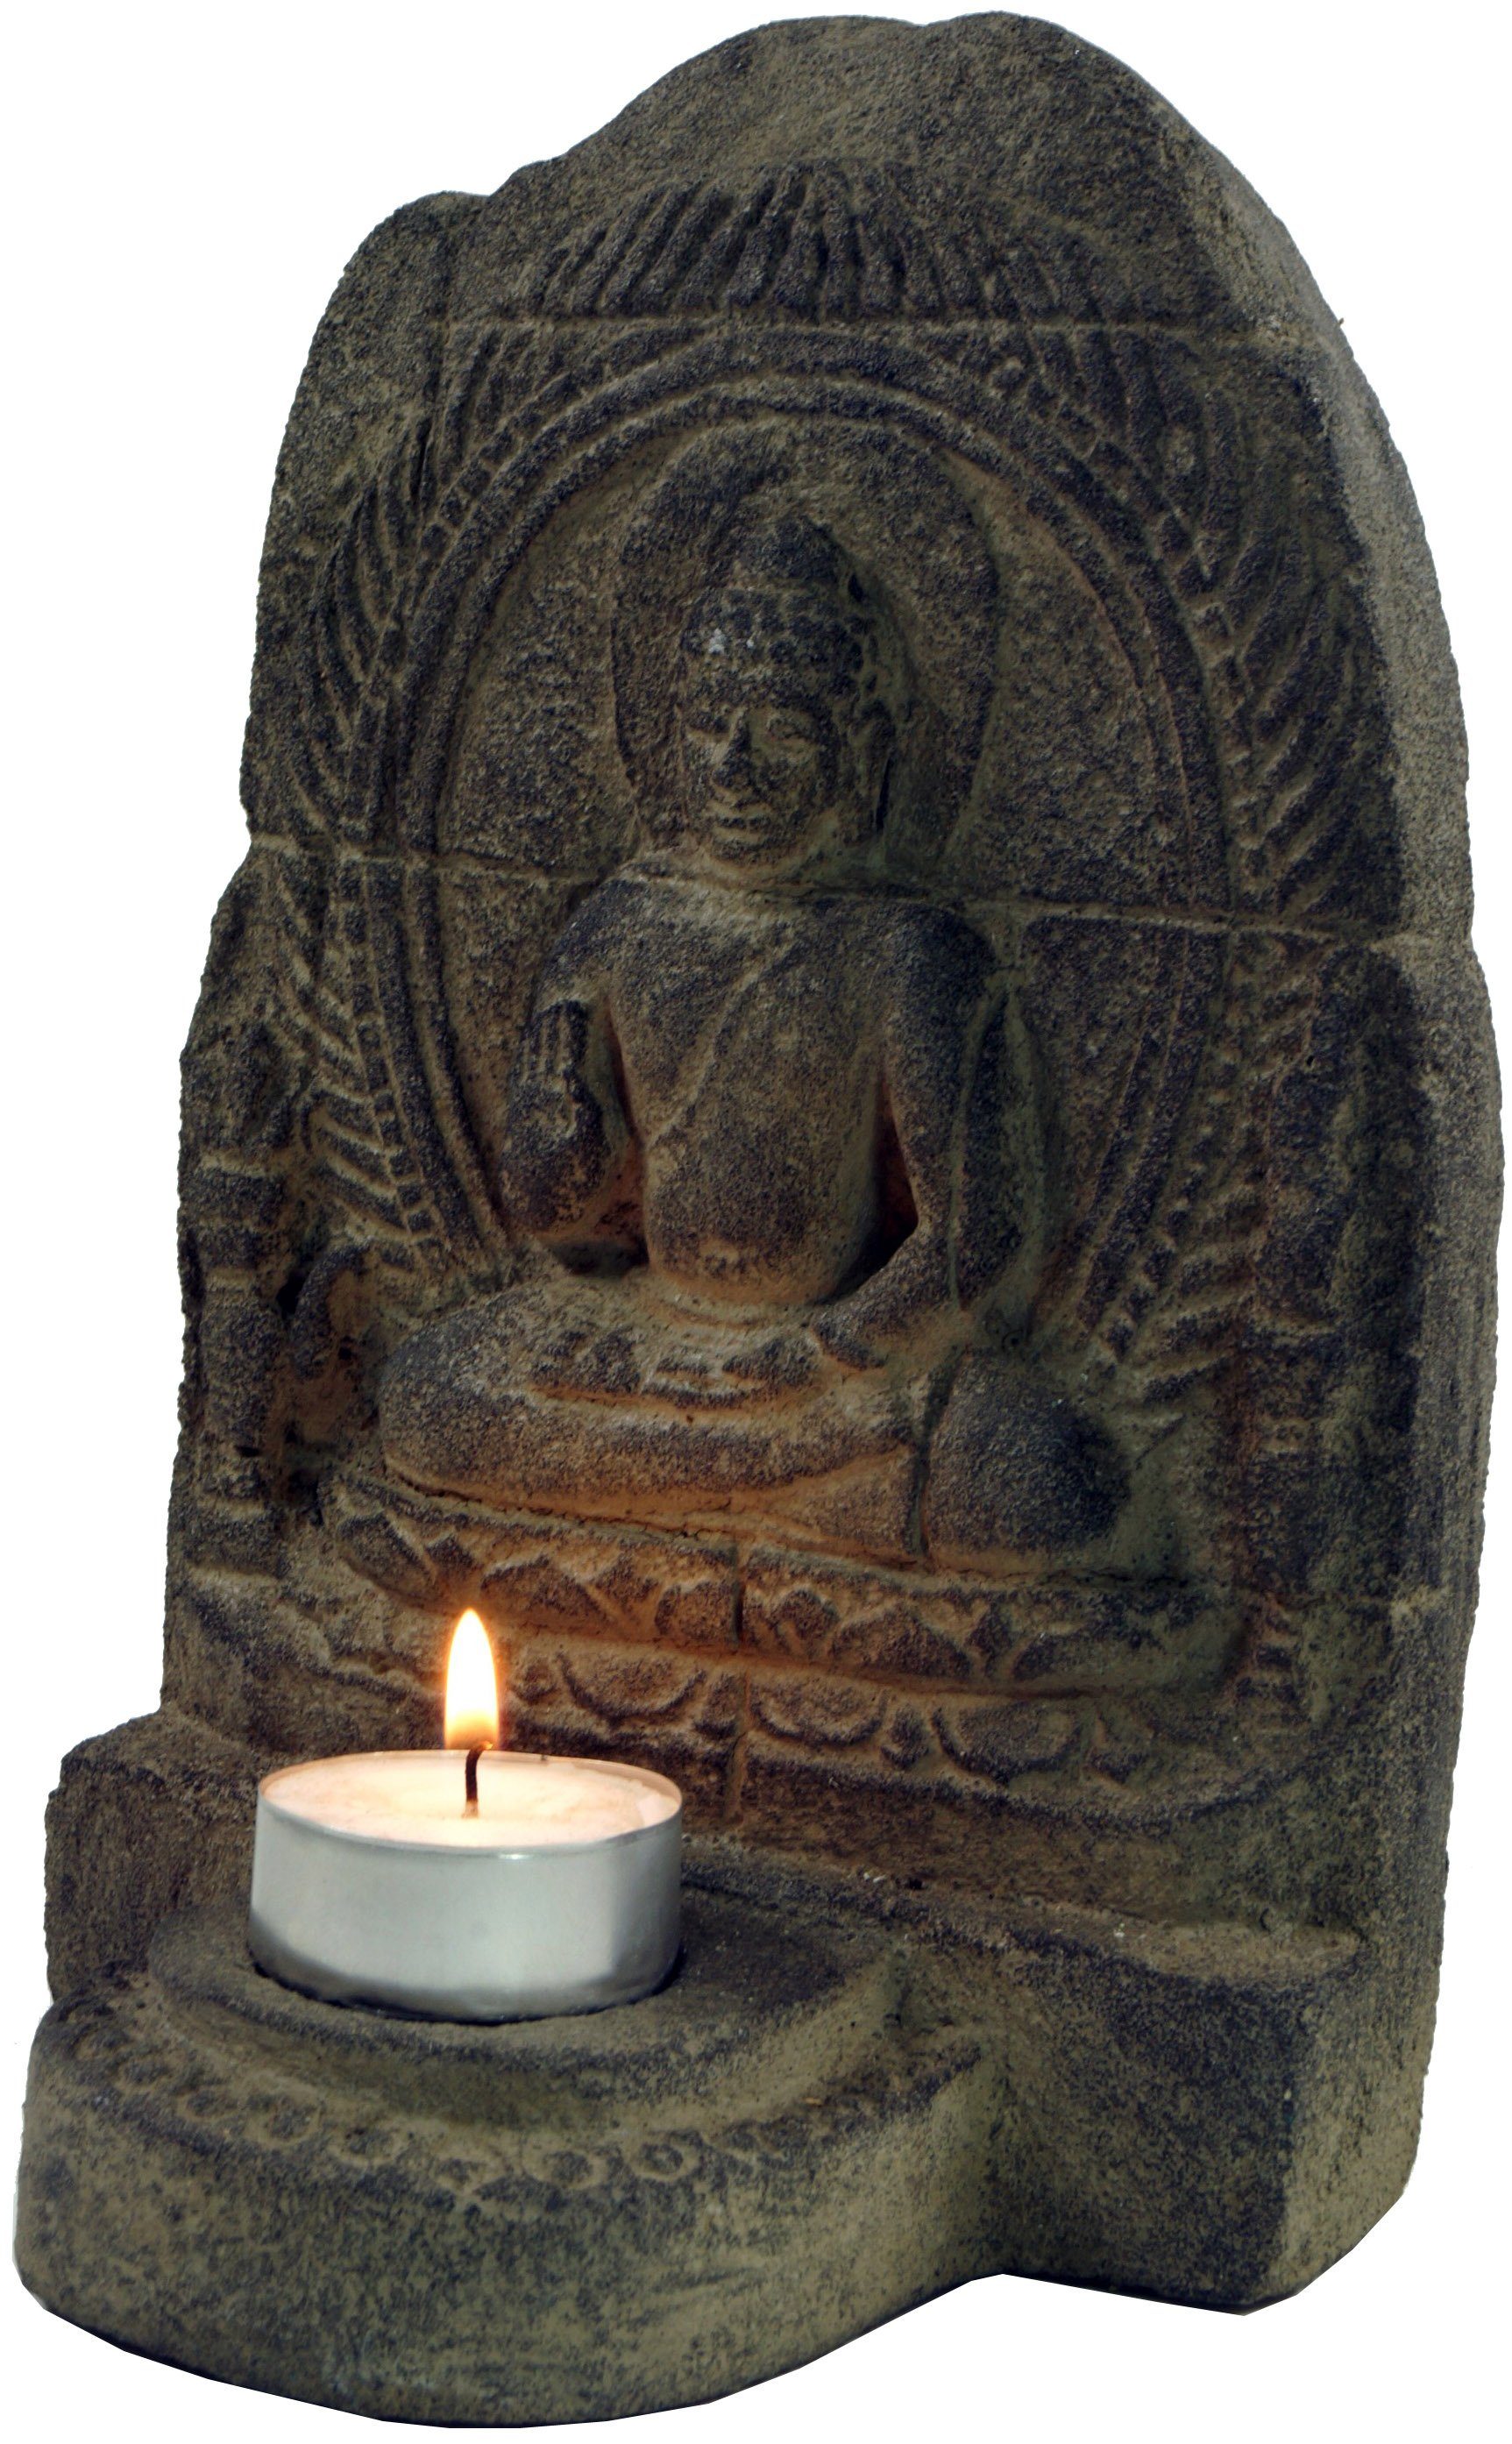 Guru-Shop Buddhafigur Minitempel, Stein Teelichthalter aus Buddhafigur